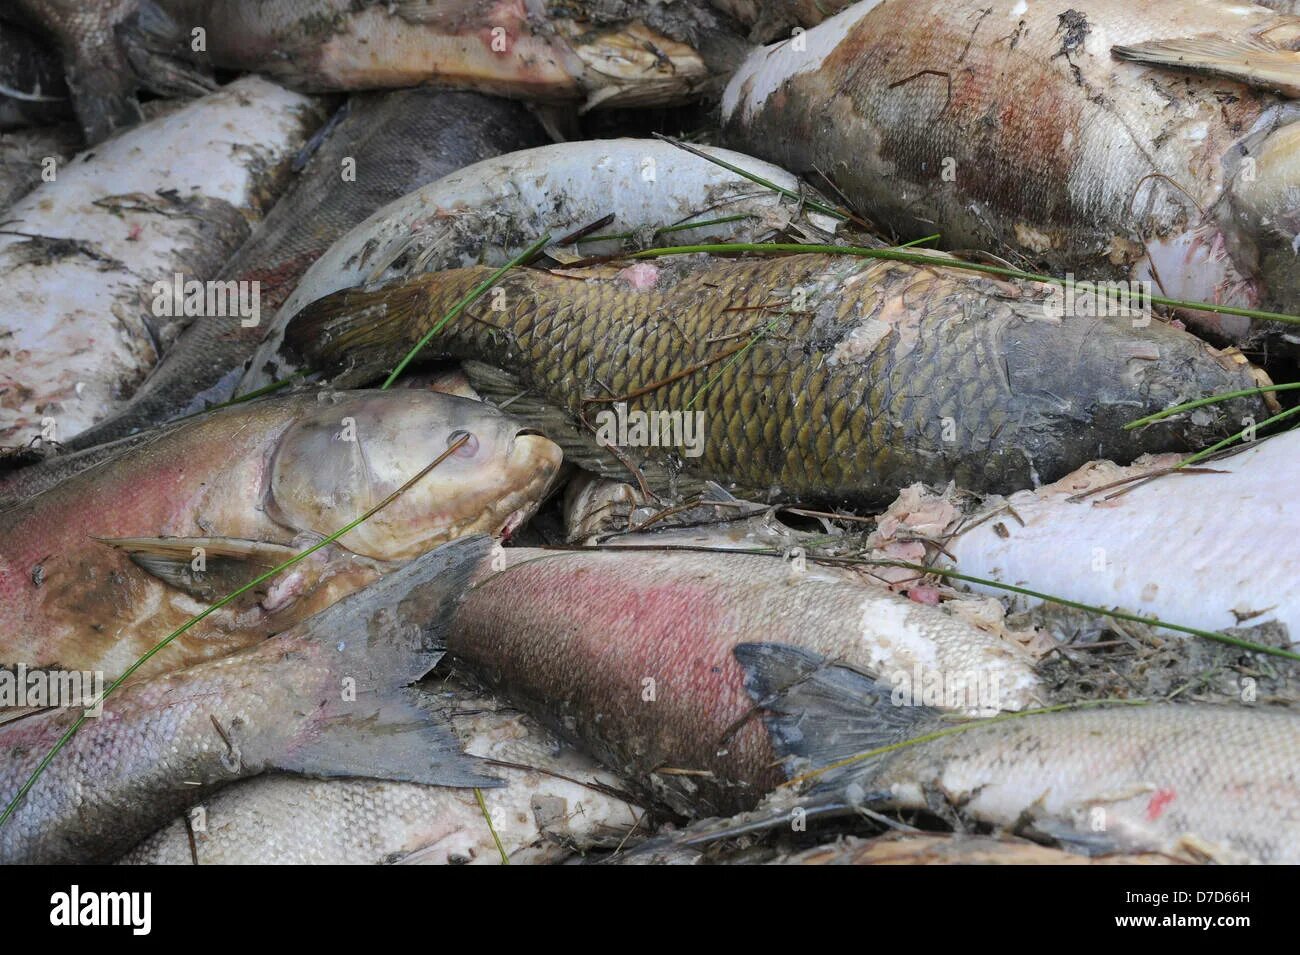 Мертвая ловля. Тускарь рыба. Курск огромный сом в реке Тускарь.